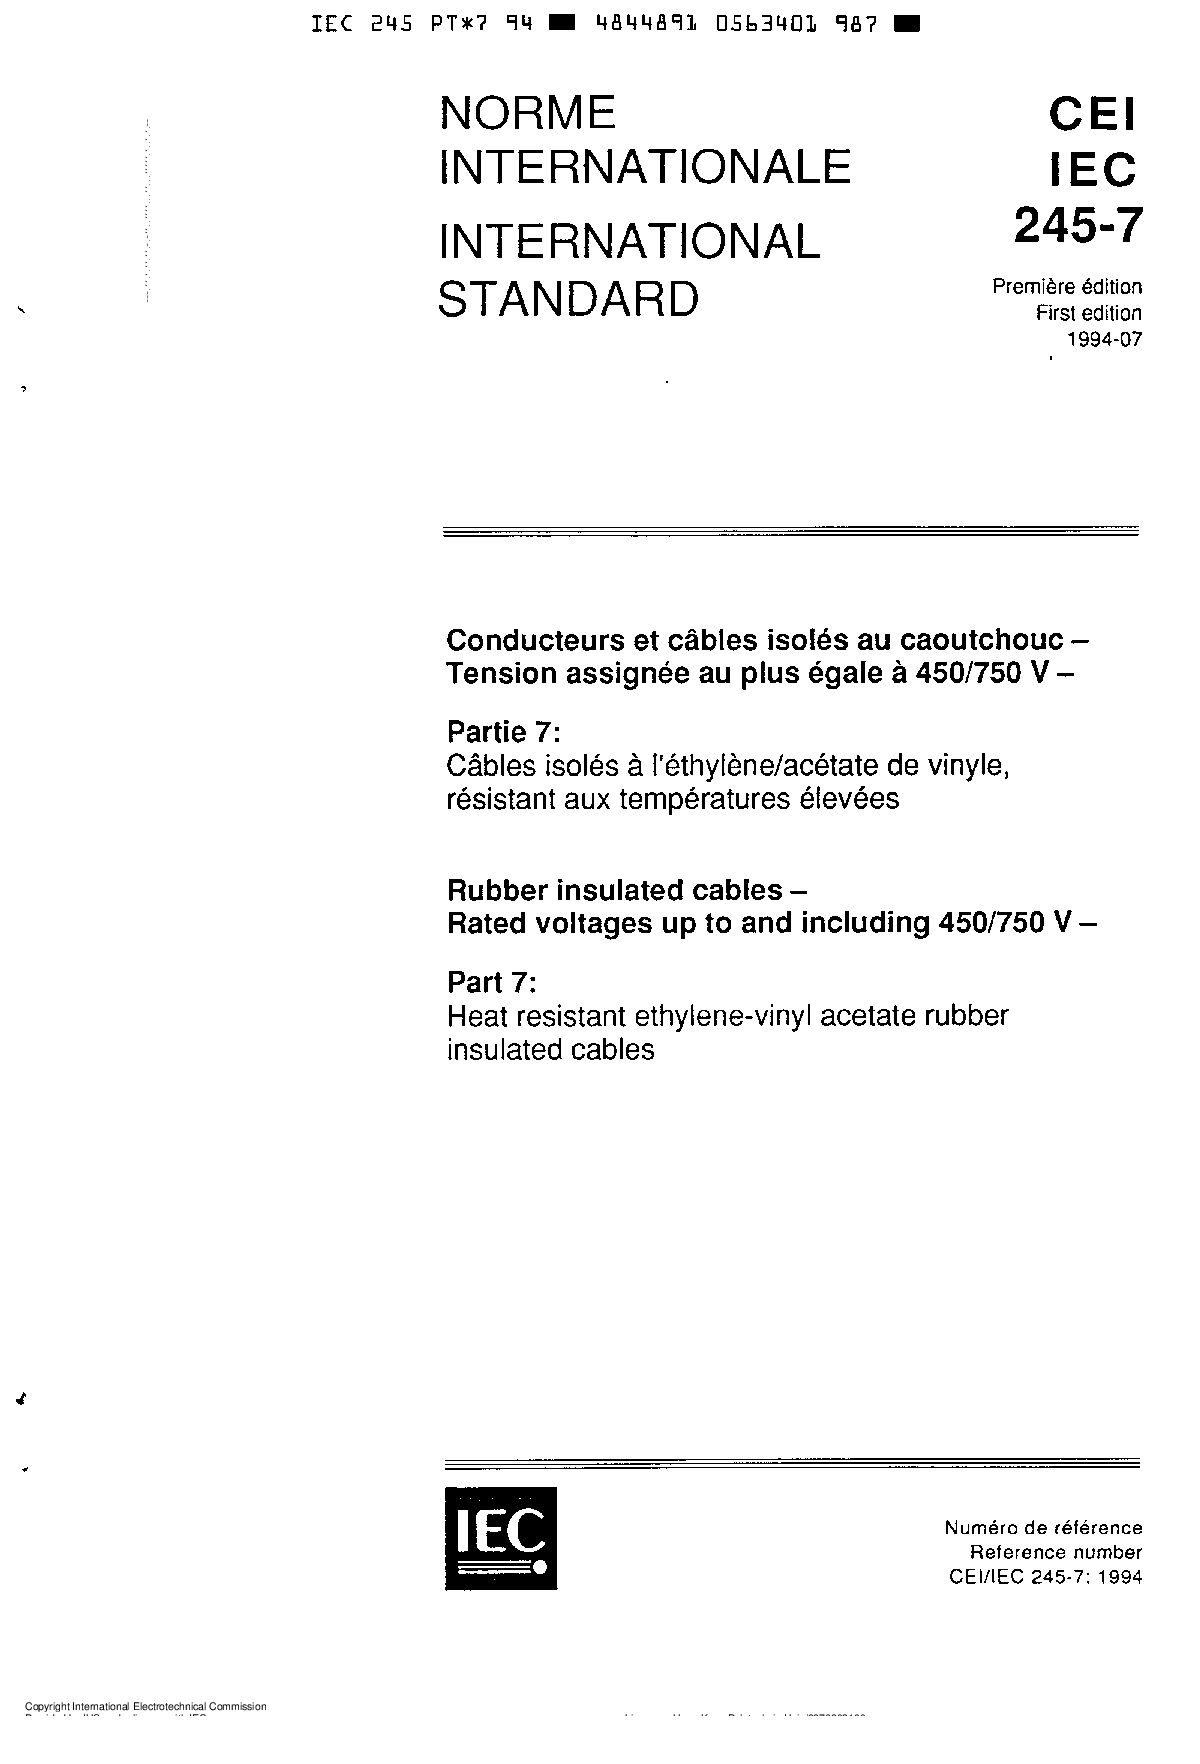 IEC 60245-7:1994